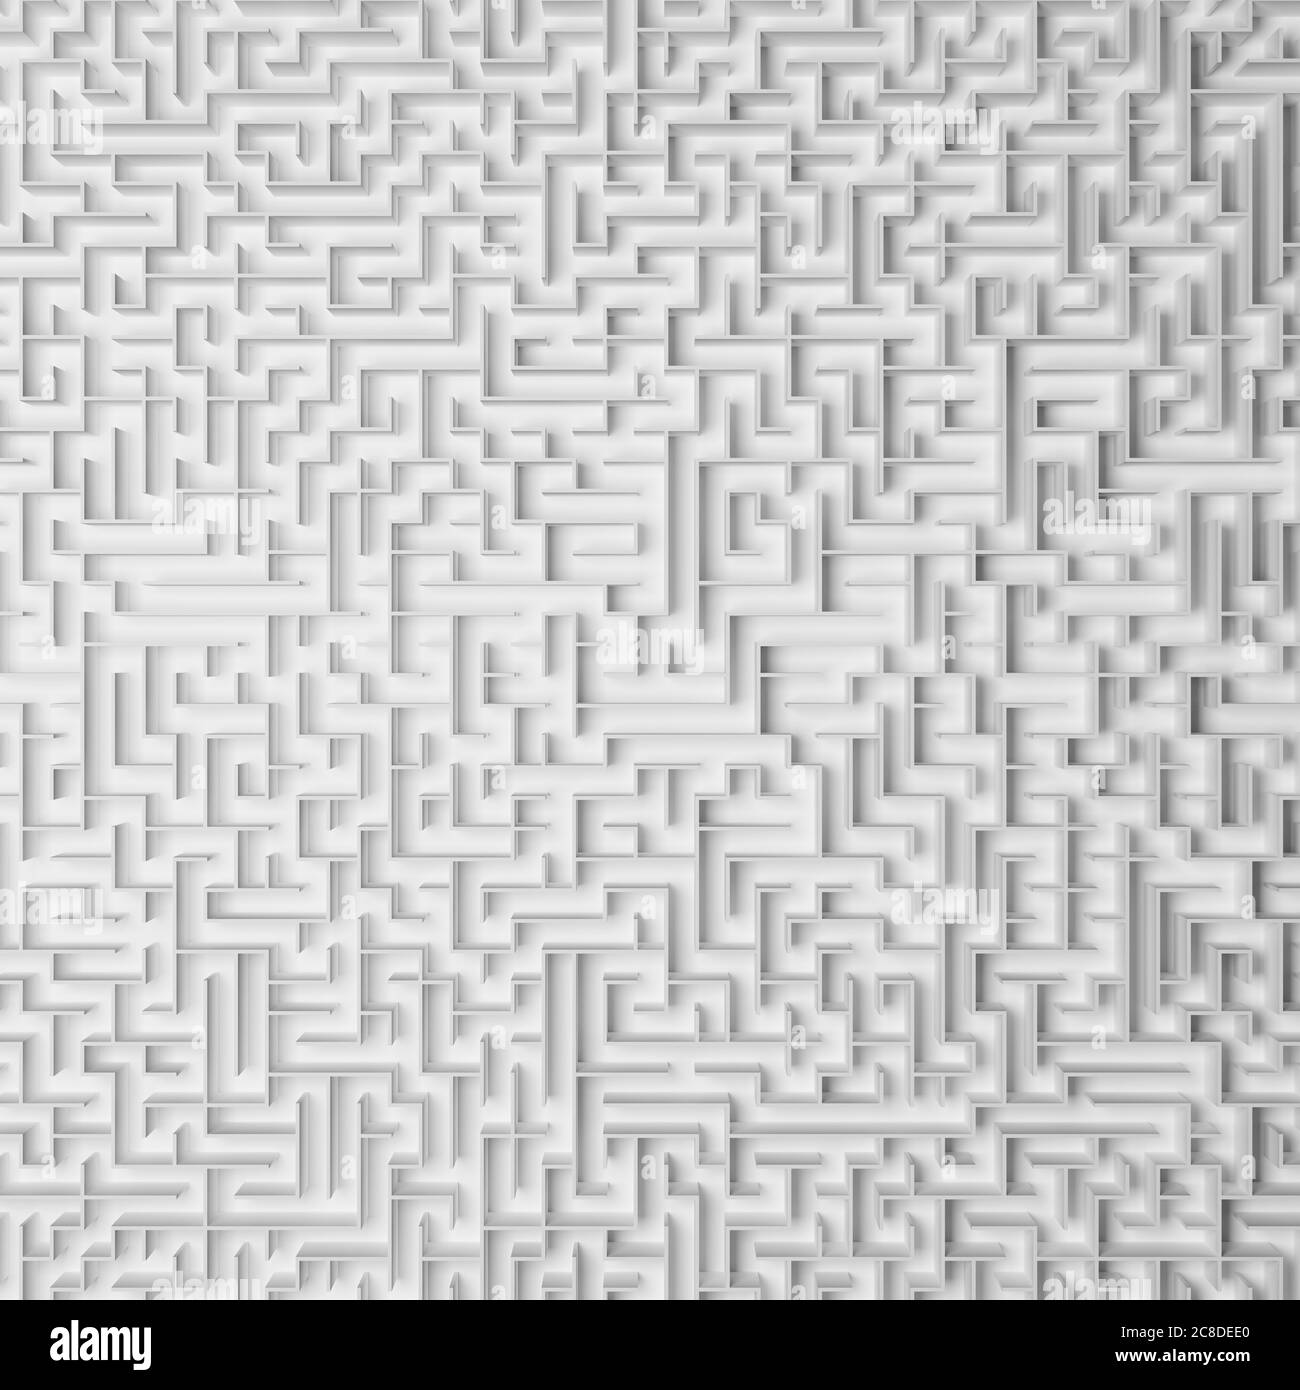 Rendering 3D: Immagine full frame di un labirinto infinito con pareti bianche riprese direttamente dall'alto - concetto per grande problema, disperazione Foto Stock